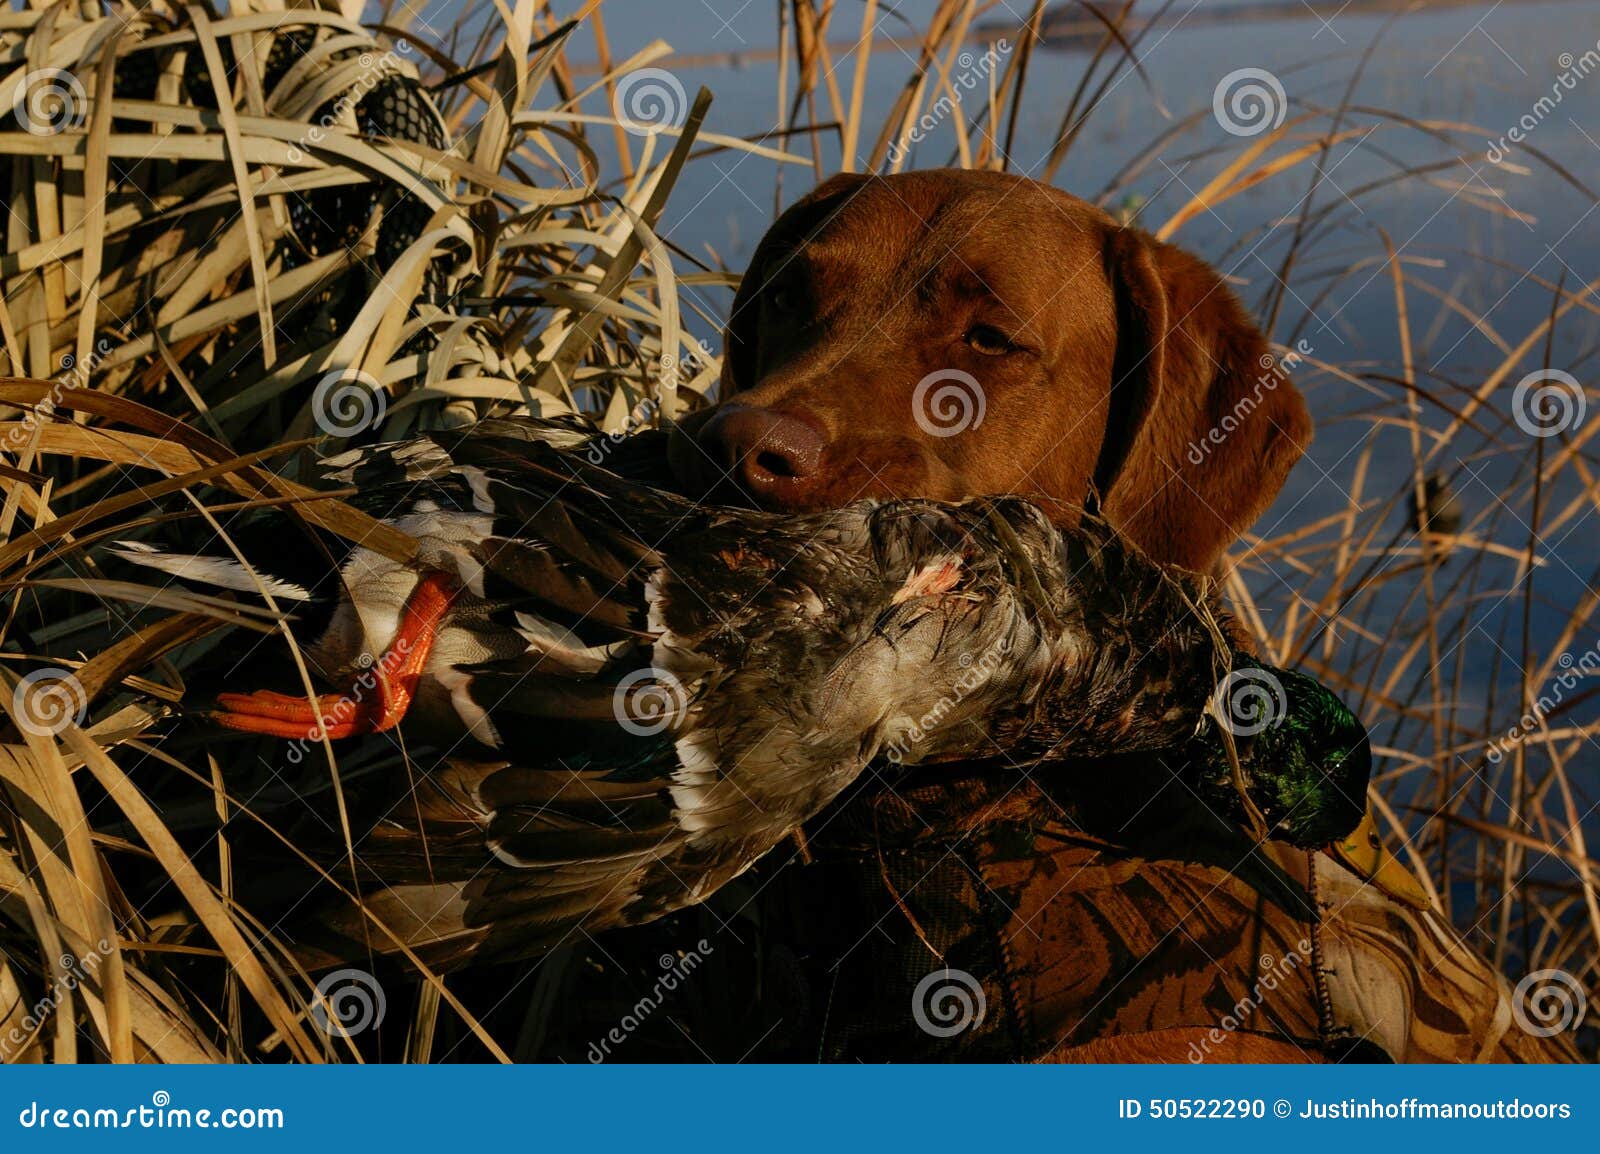 Охотничье владение. Собаки едят уток. Собака ест птичку. Чем питается охотничья собака. Какие птицы едят собак.